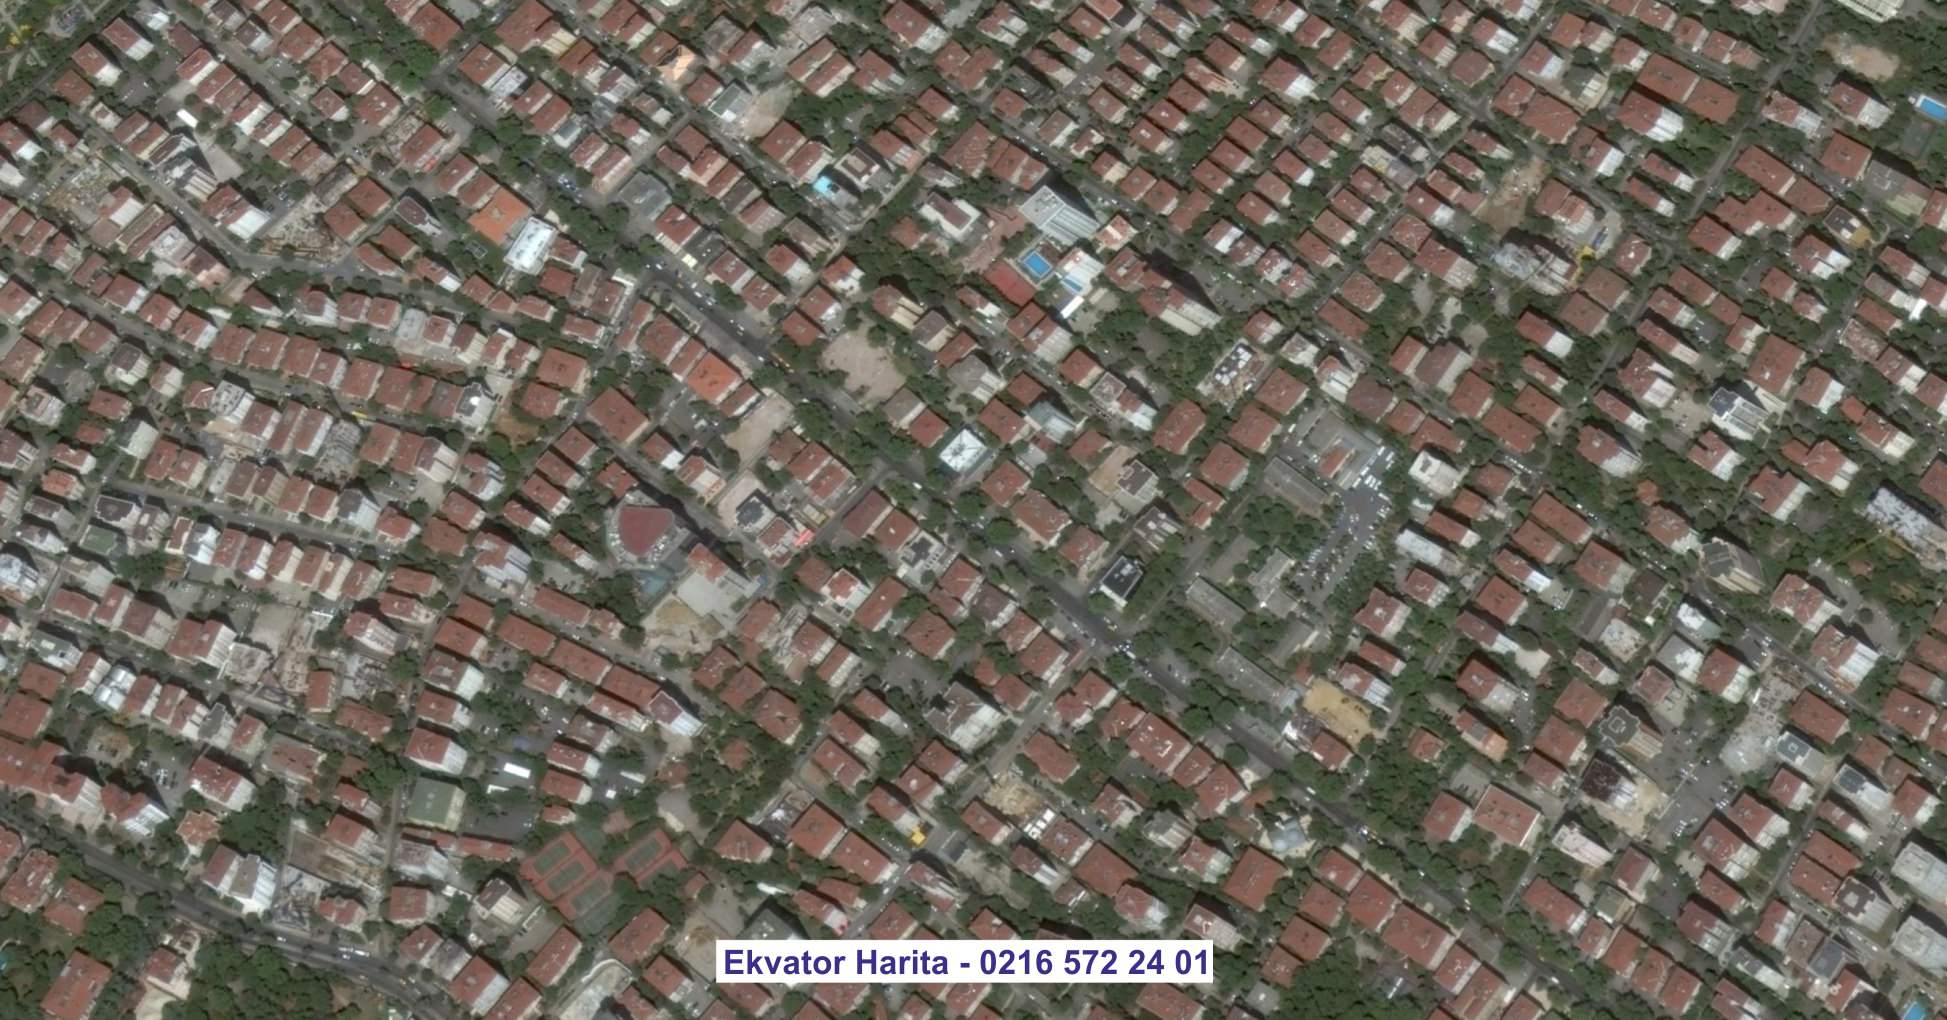 Taşkent Uydu Görüntüsü Örnek Fotoğrafı